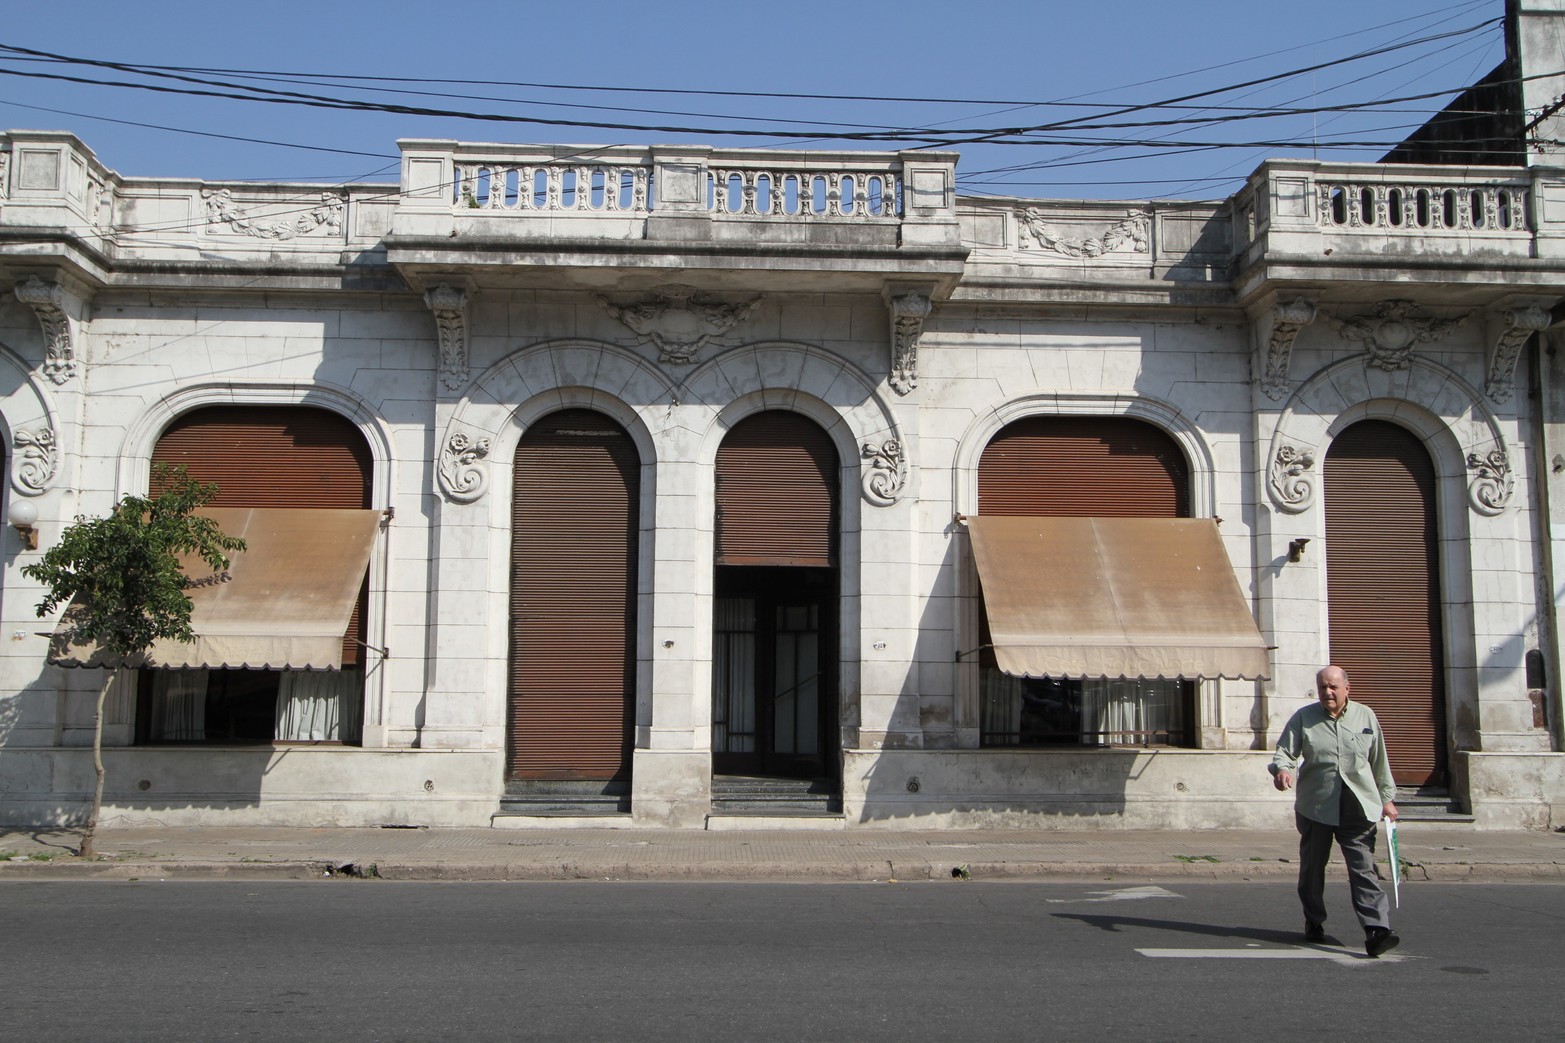 La fachada del bar ubicado en Rivadavia al 2900 casi Crespo. Foto Amancio Alem